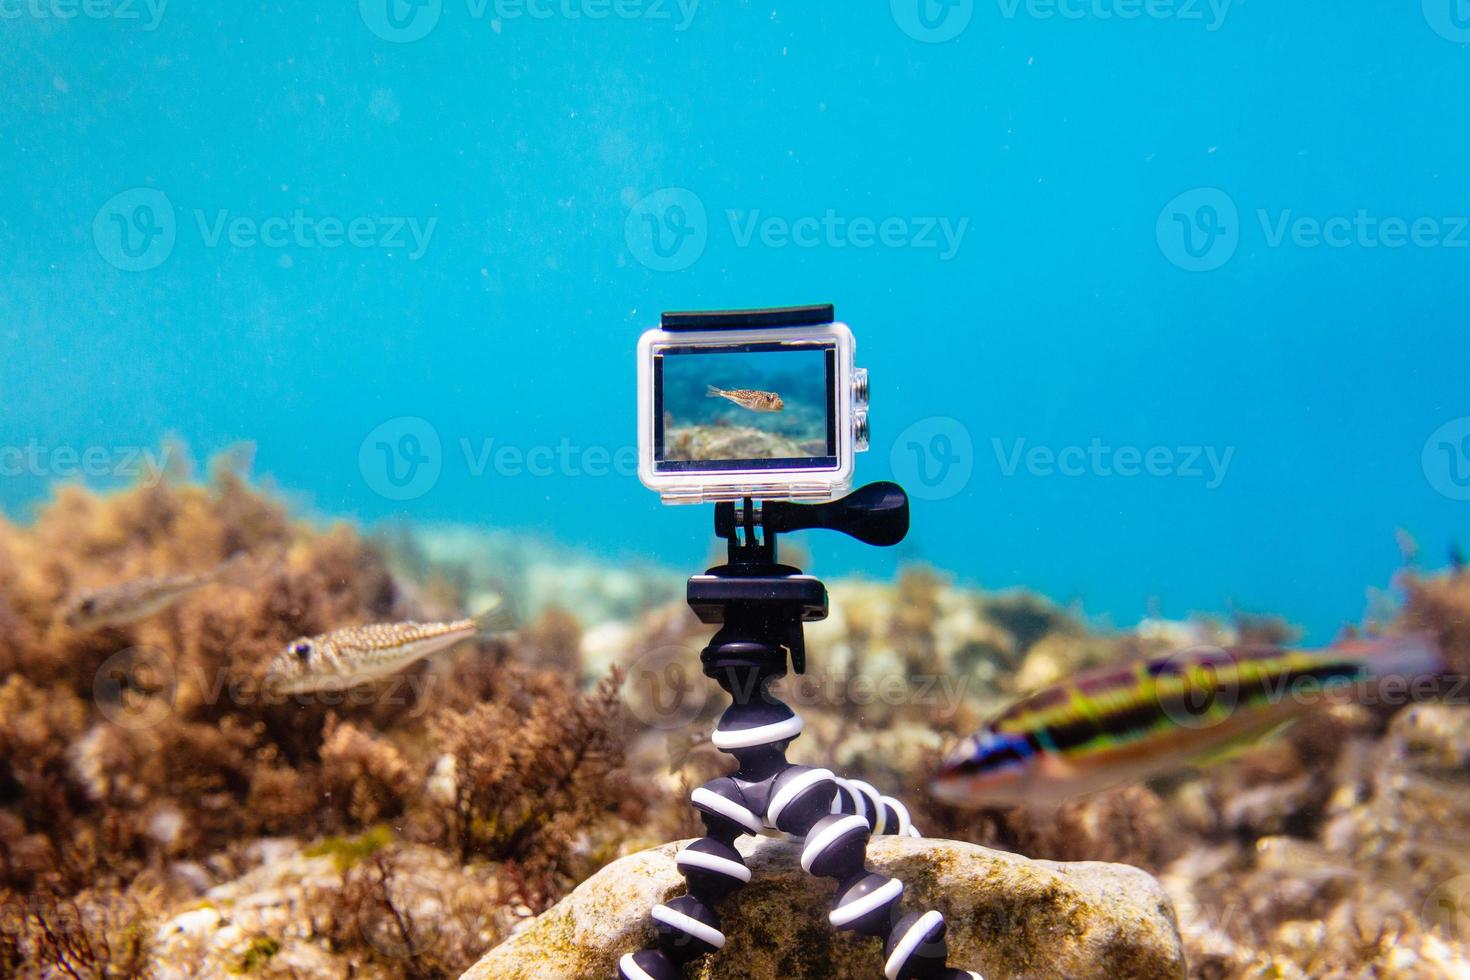 använder actionkamera i vattentät låda för att göra foton och video under vattnet